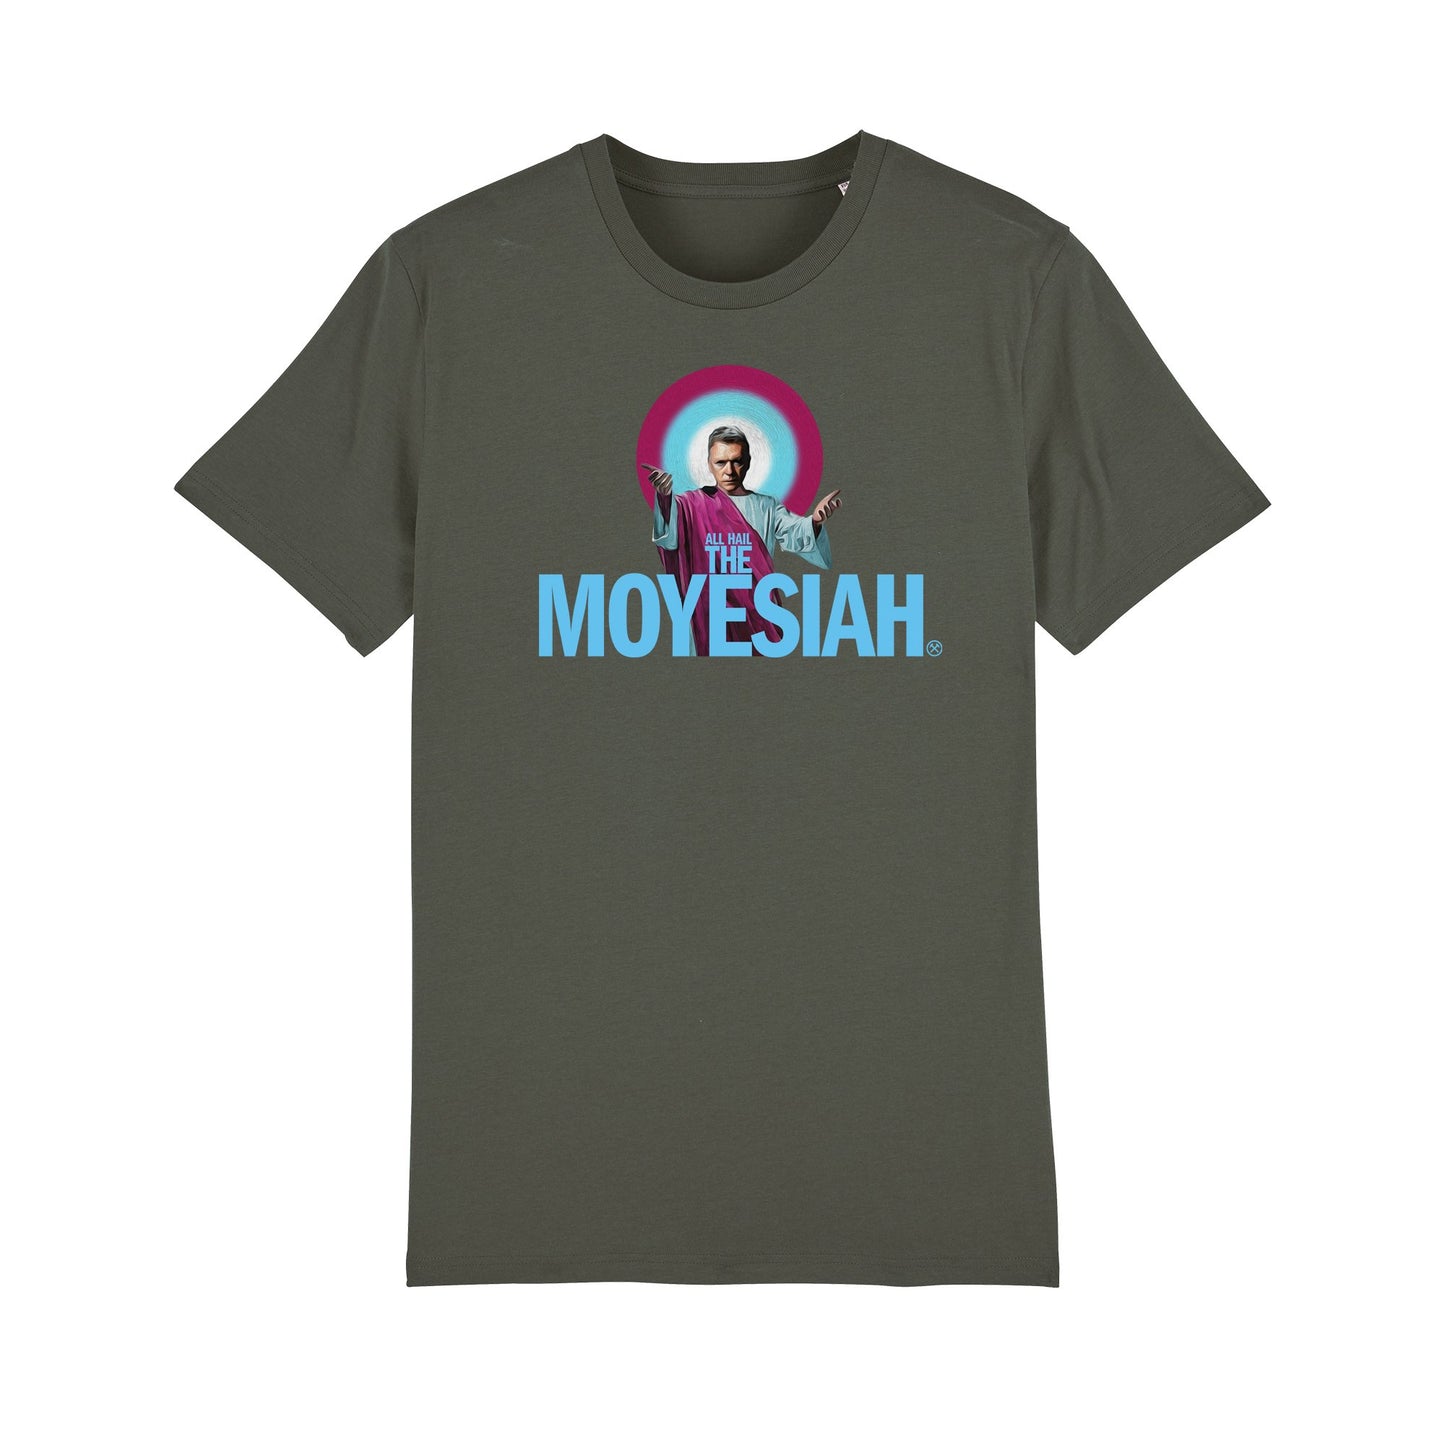 The Moyesiah Tee